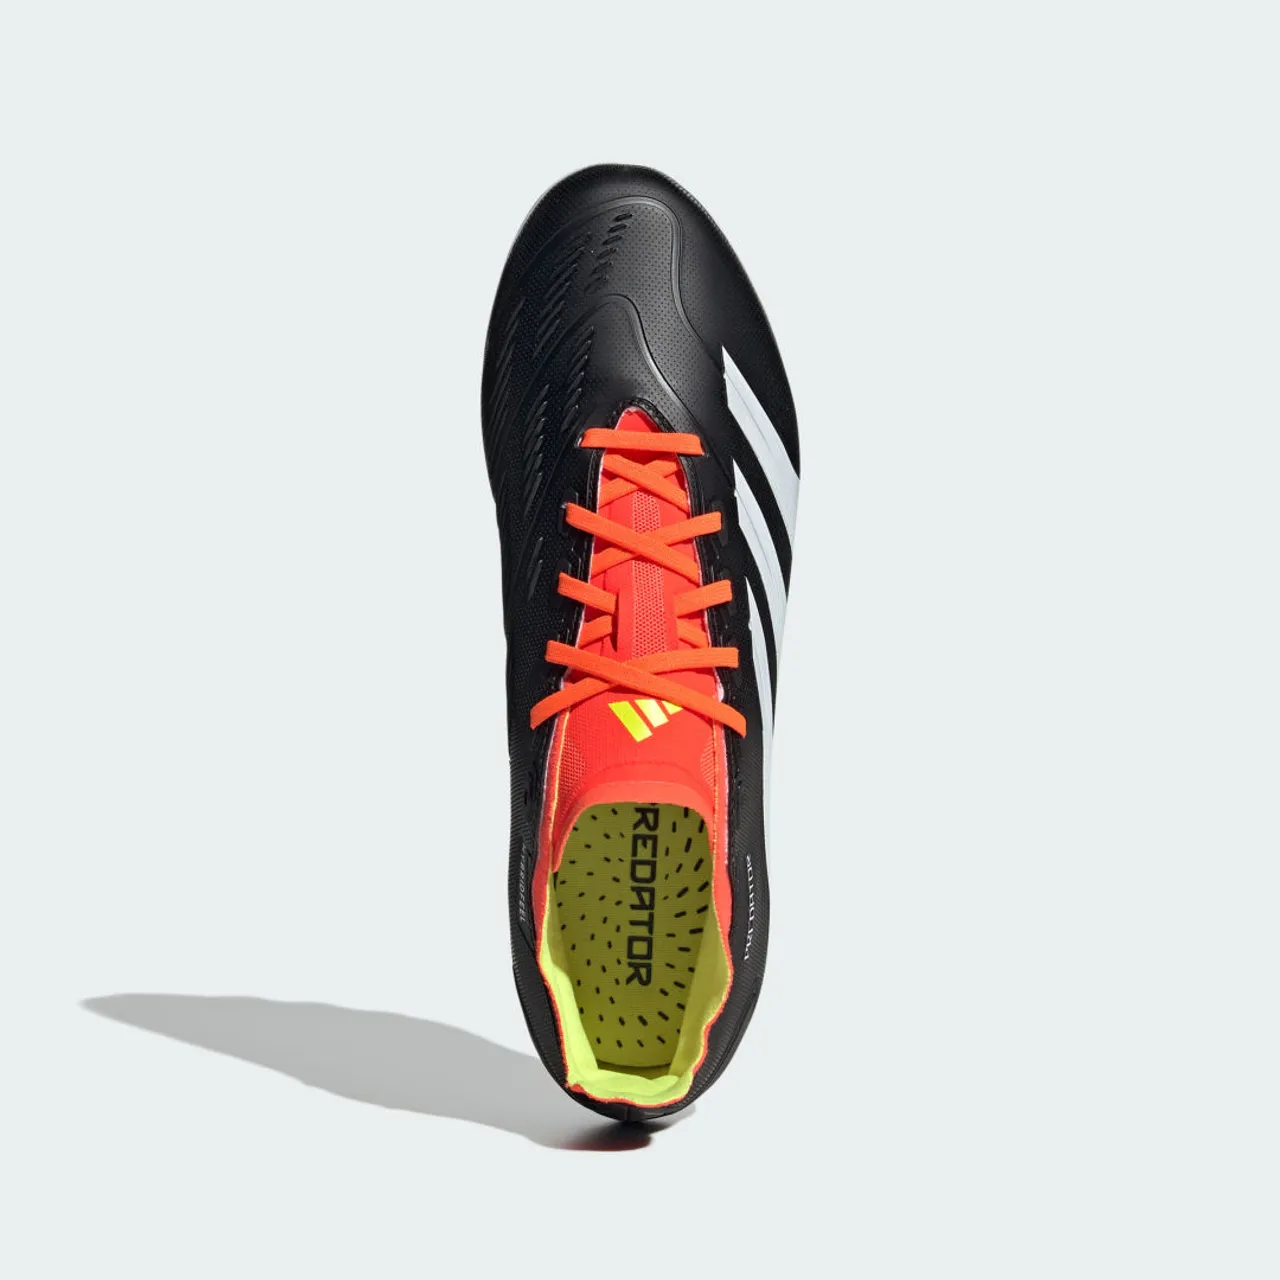 Predator League 2G/3G Artificial Grass Football Boots